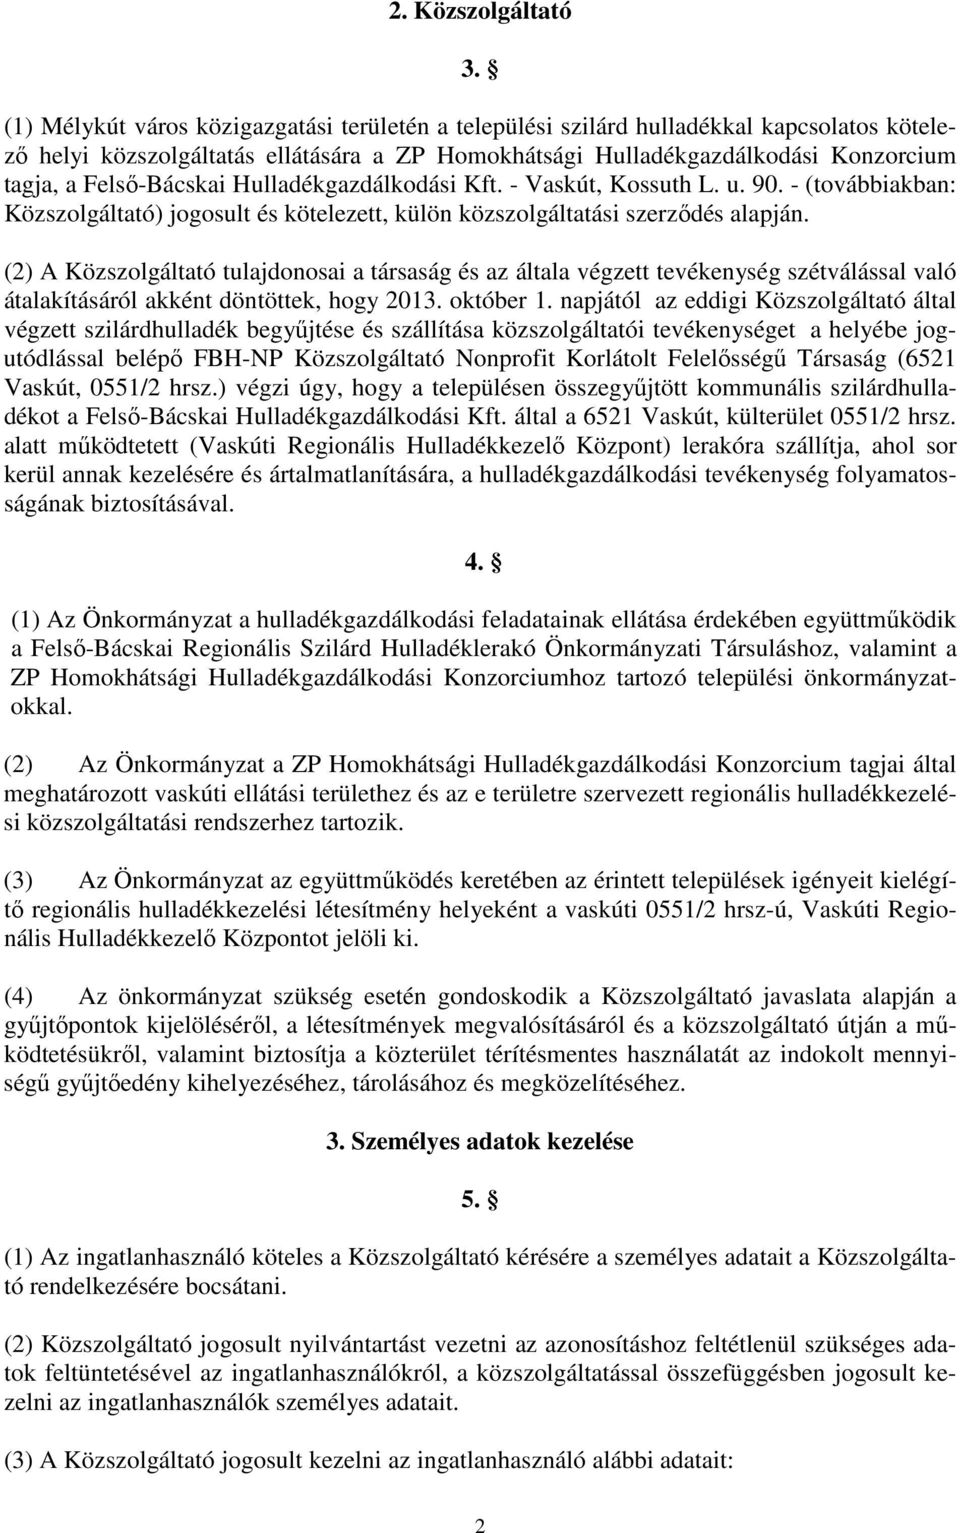 Felső-Bácskai Hulladékgazdálkodási Kft. - Vaskút, Kossuth L. u. 90. - (továbbiakban: Közszolgáltató) jogosult és kötelezett, külön közszolgáltatási szerződés alapján.